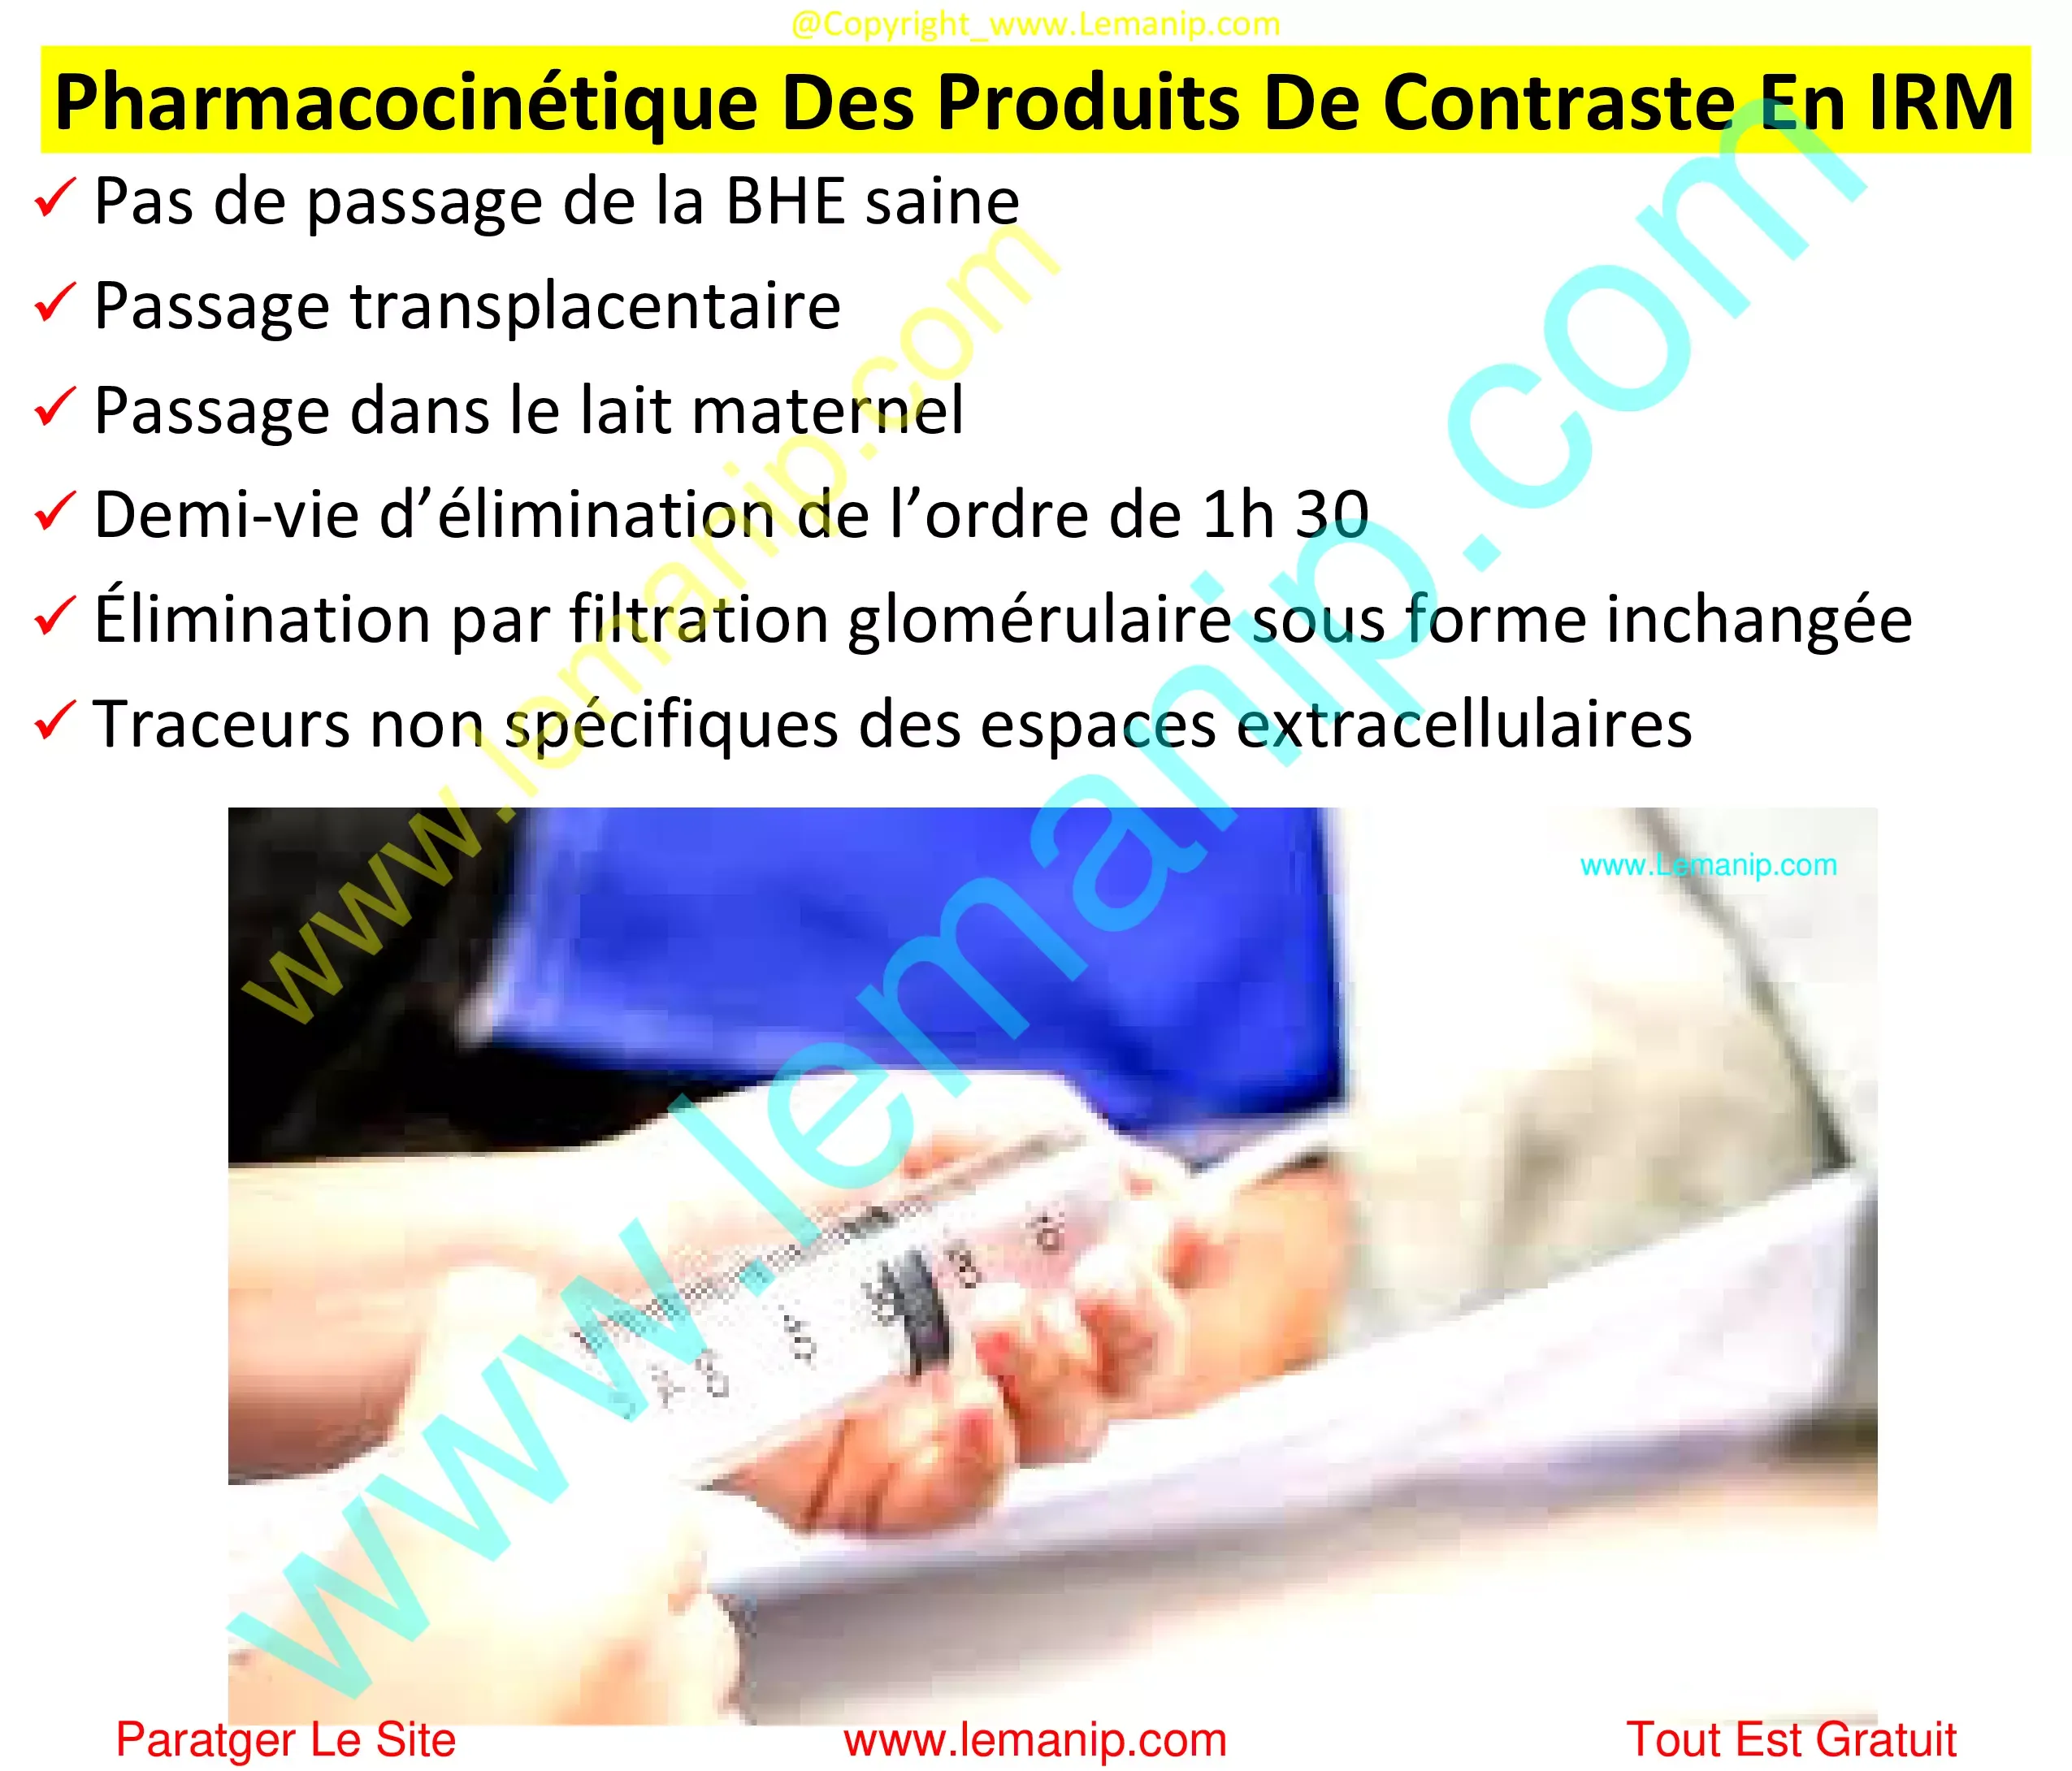 Pharmacocinétique Des Produits De Contraste En IRM